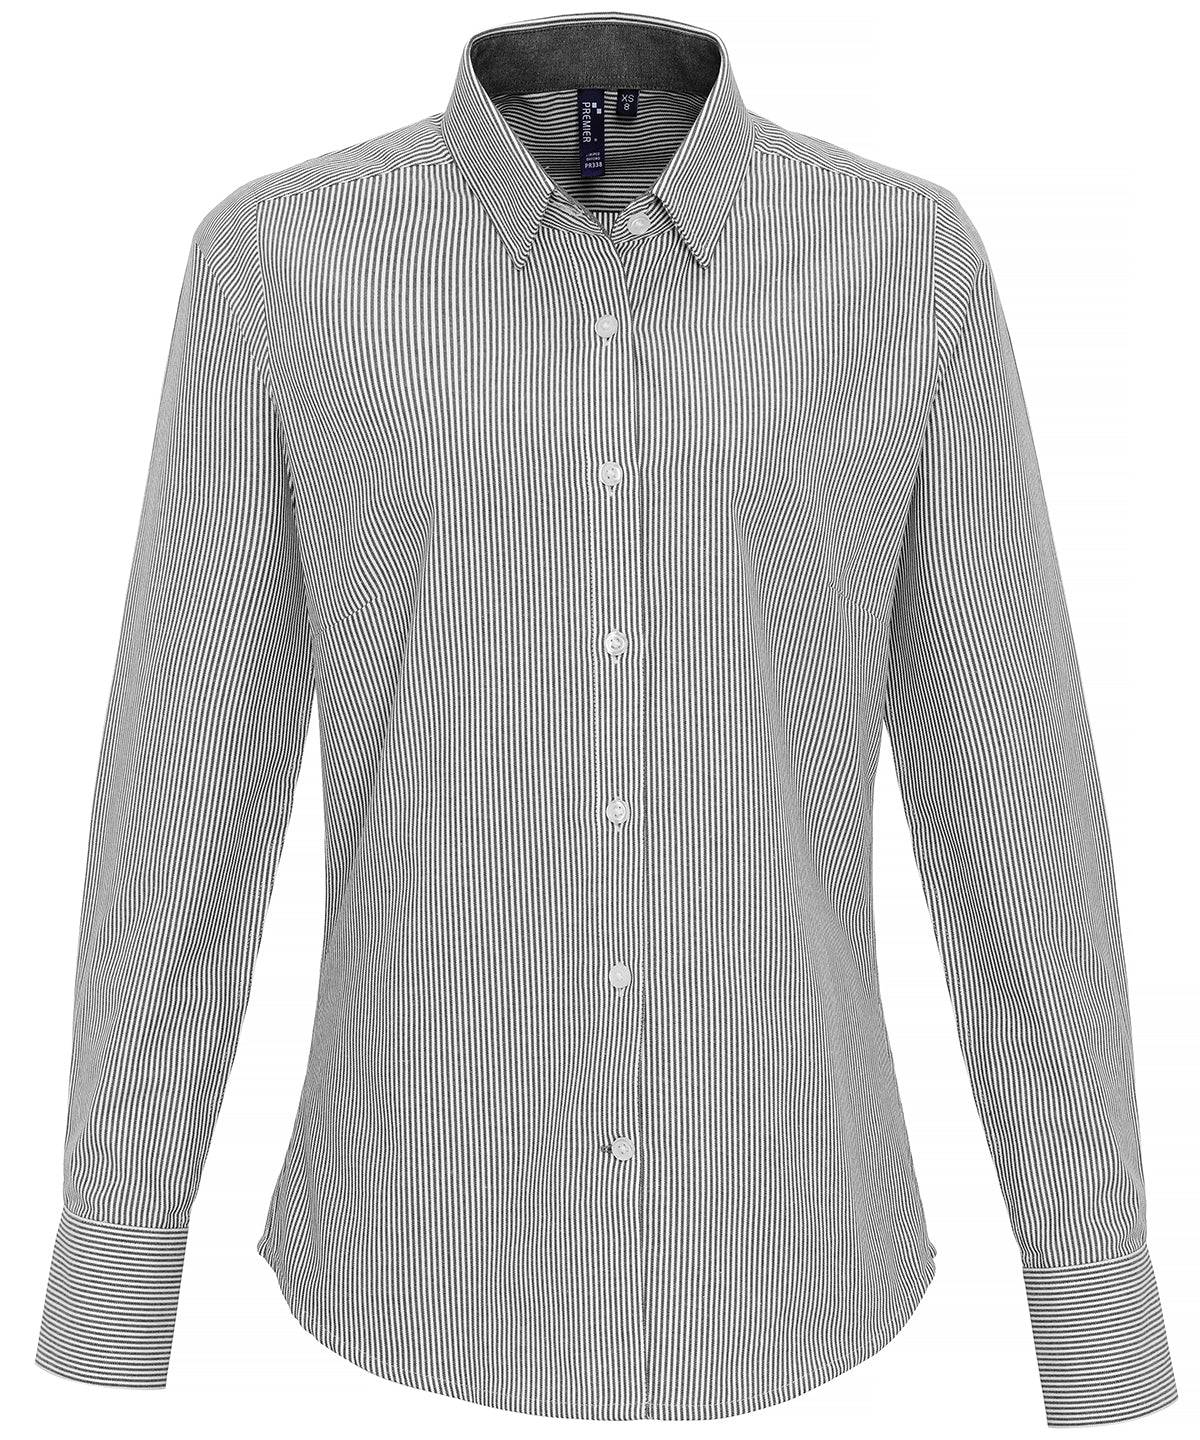 White/Grey - Women's cotton-rich Oxford stripes blouse